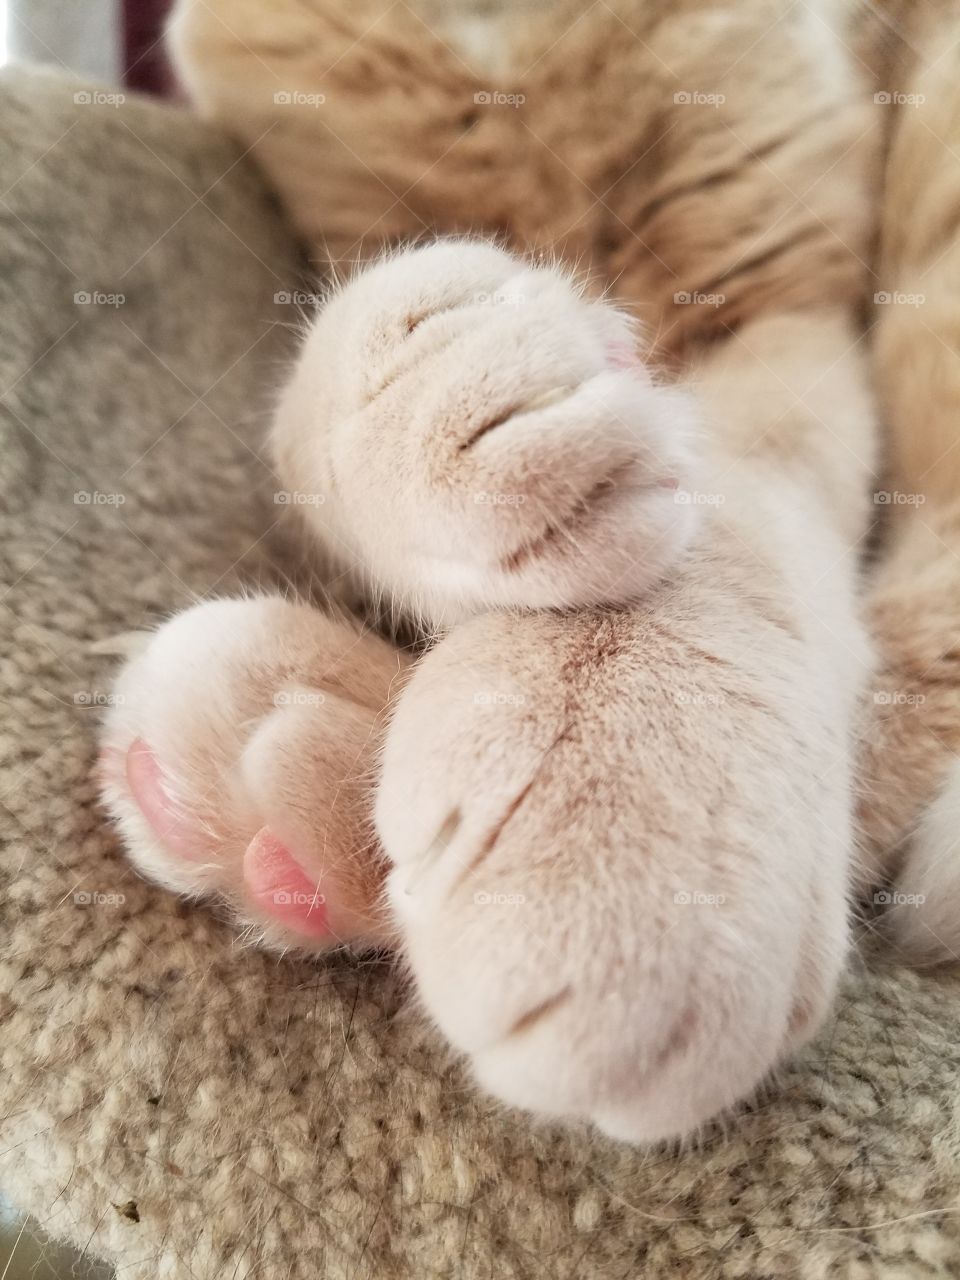 Cat paws